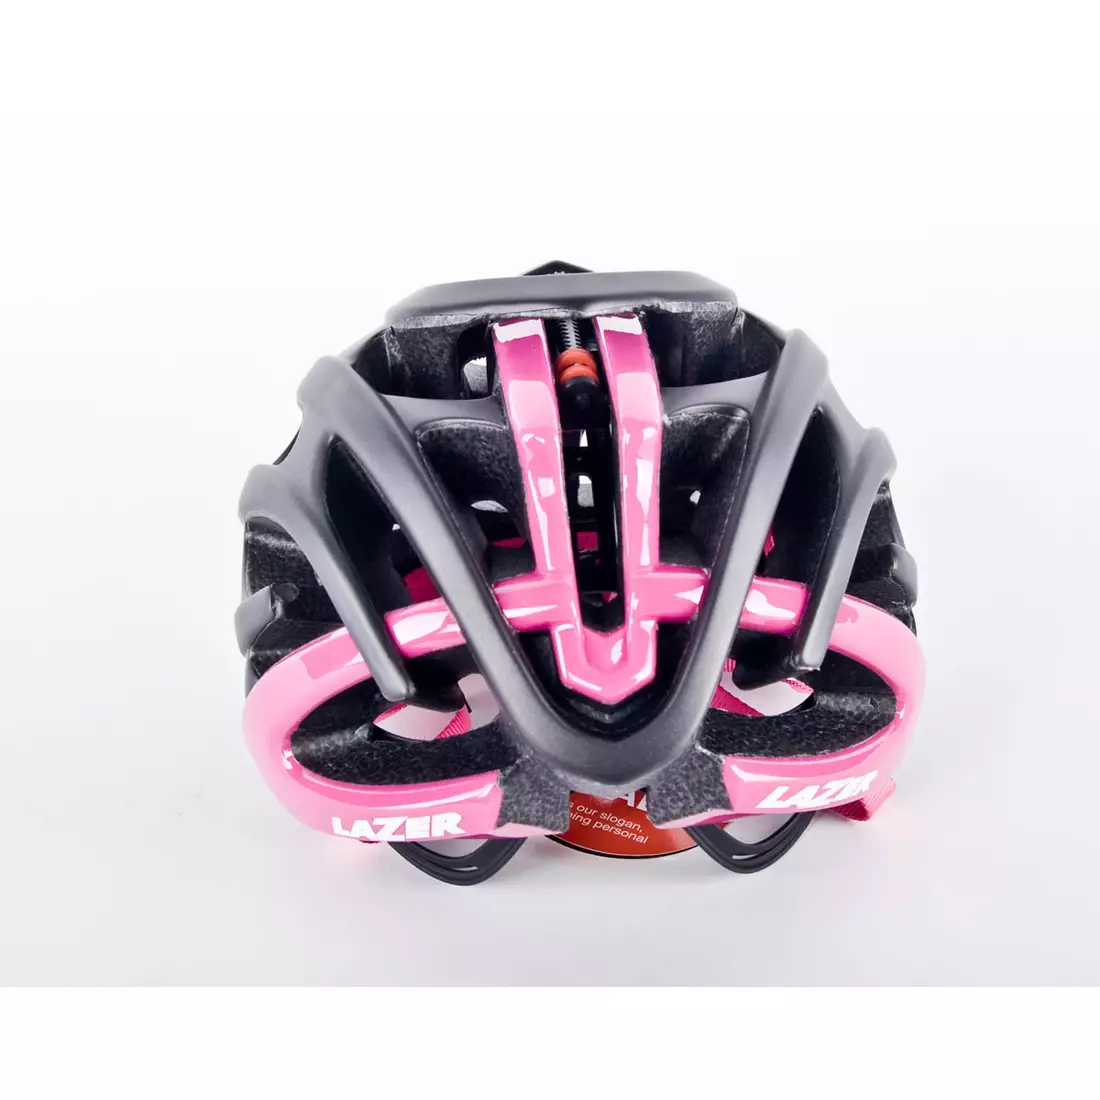 Casca pentru bicicleta de drum LAZER BLADE+ Rollsys&amp;#x00AE; negru-roz mat